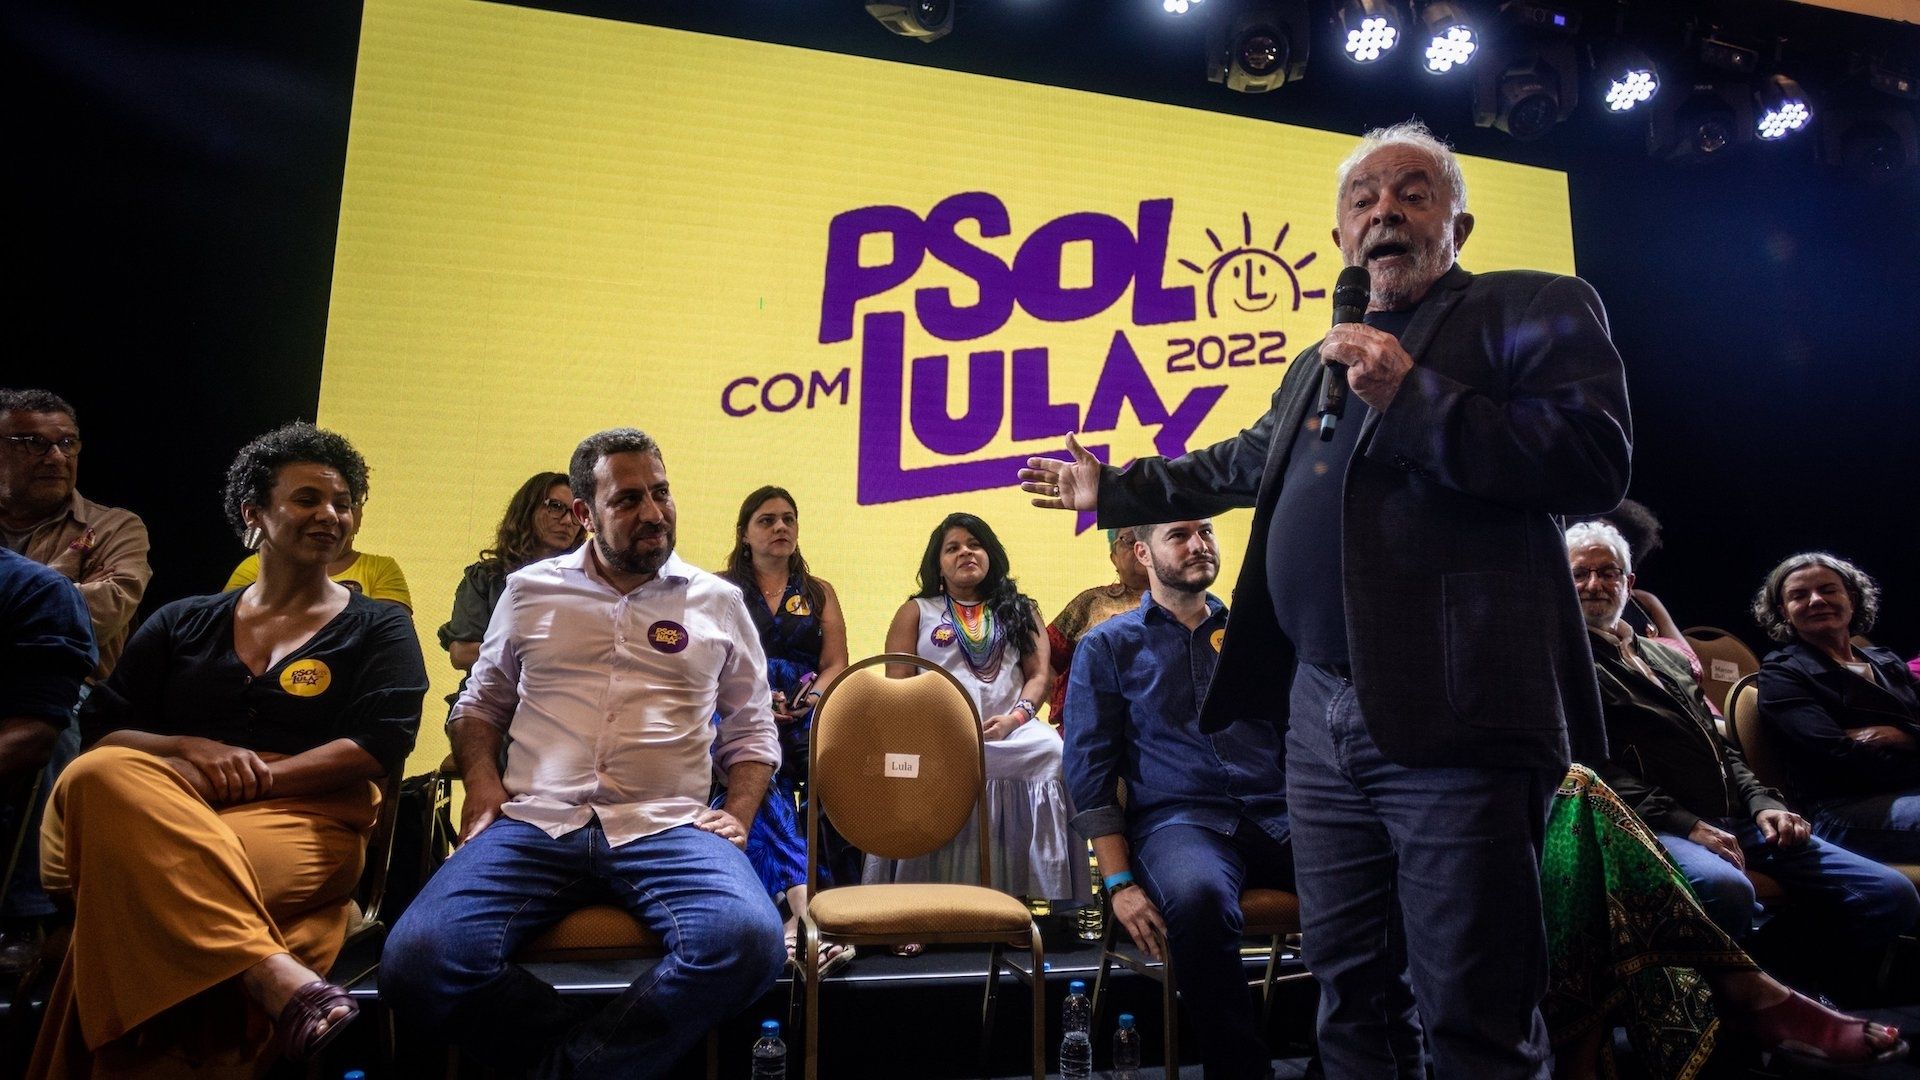 Foto do ex-presidente Lula falando em um palanque com o símbolo do PSOL ao fundo.